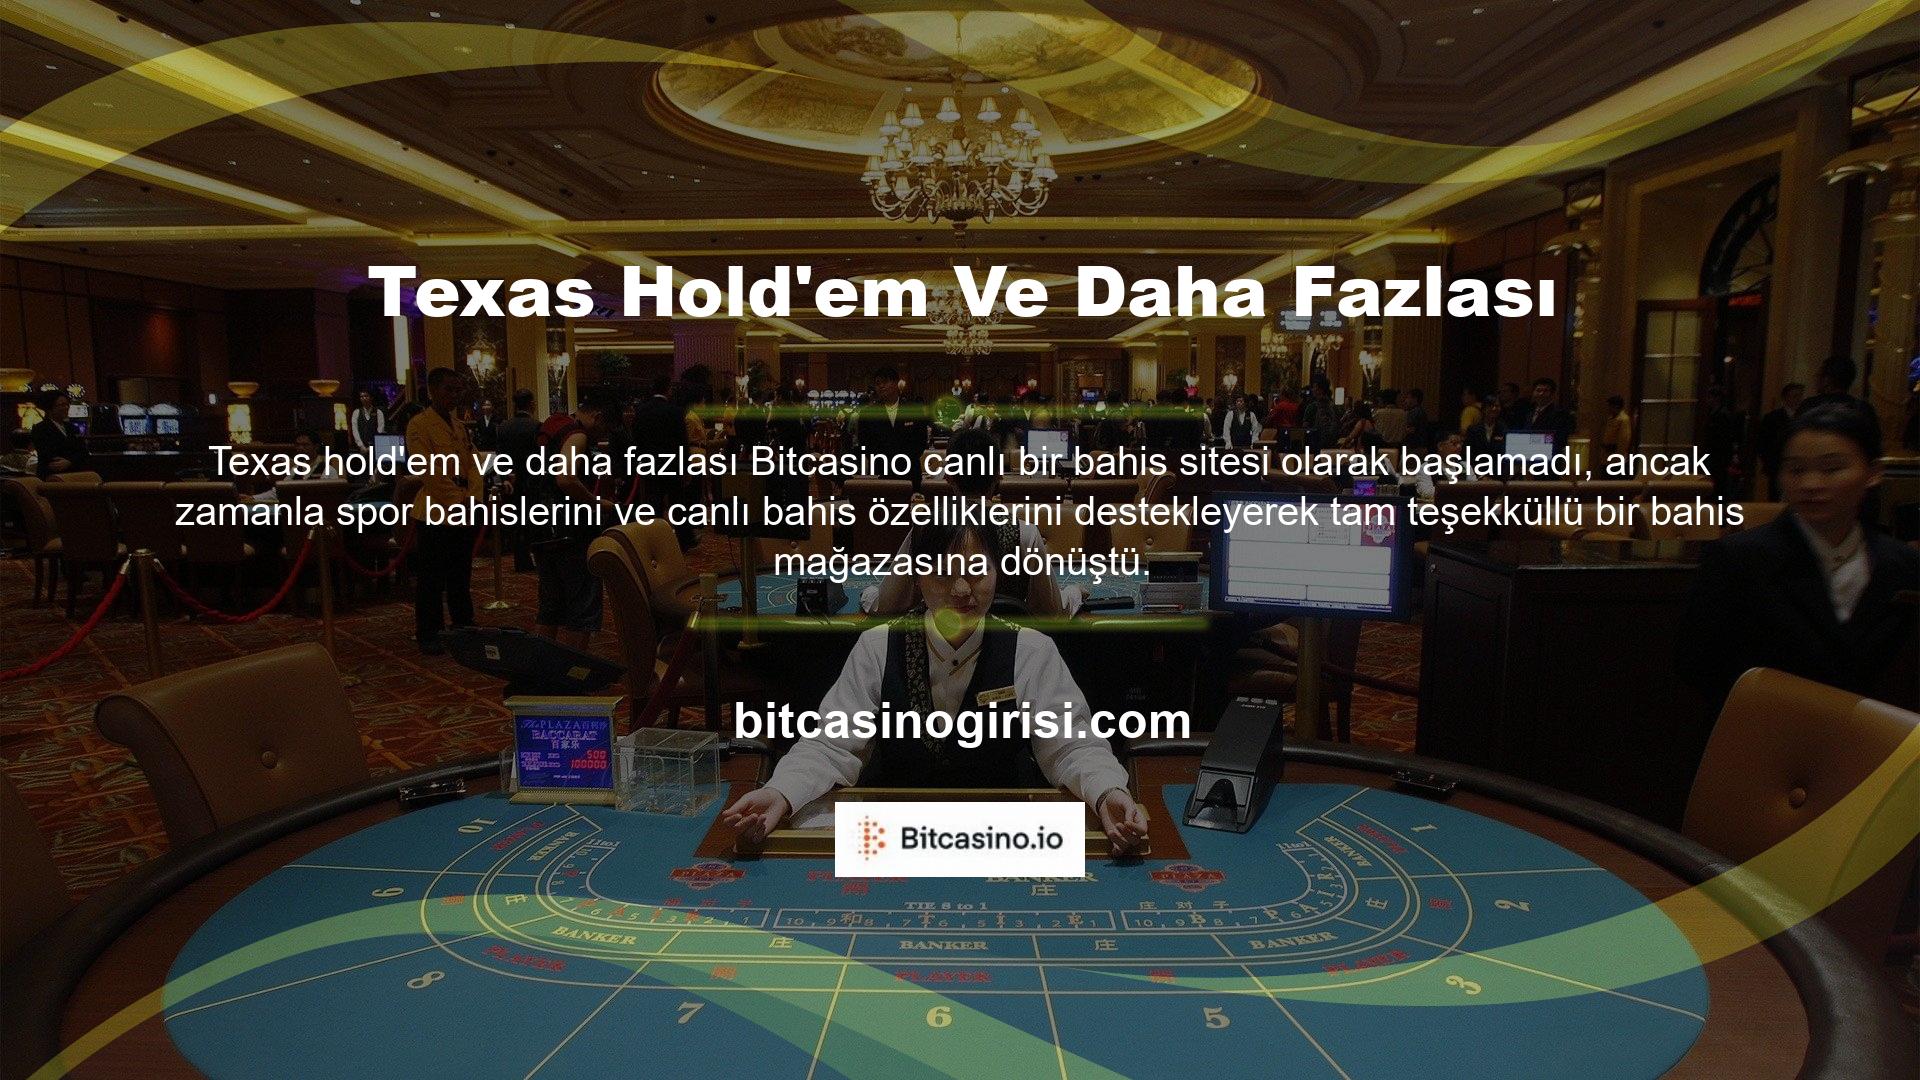 Bu durumda temalı casino hizmetleri vaat eden Bitcasino casino web sitesi doğdu